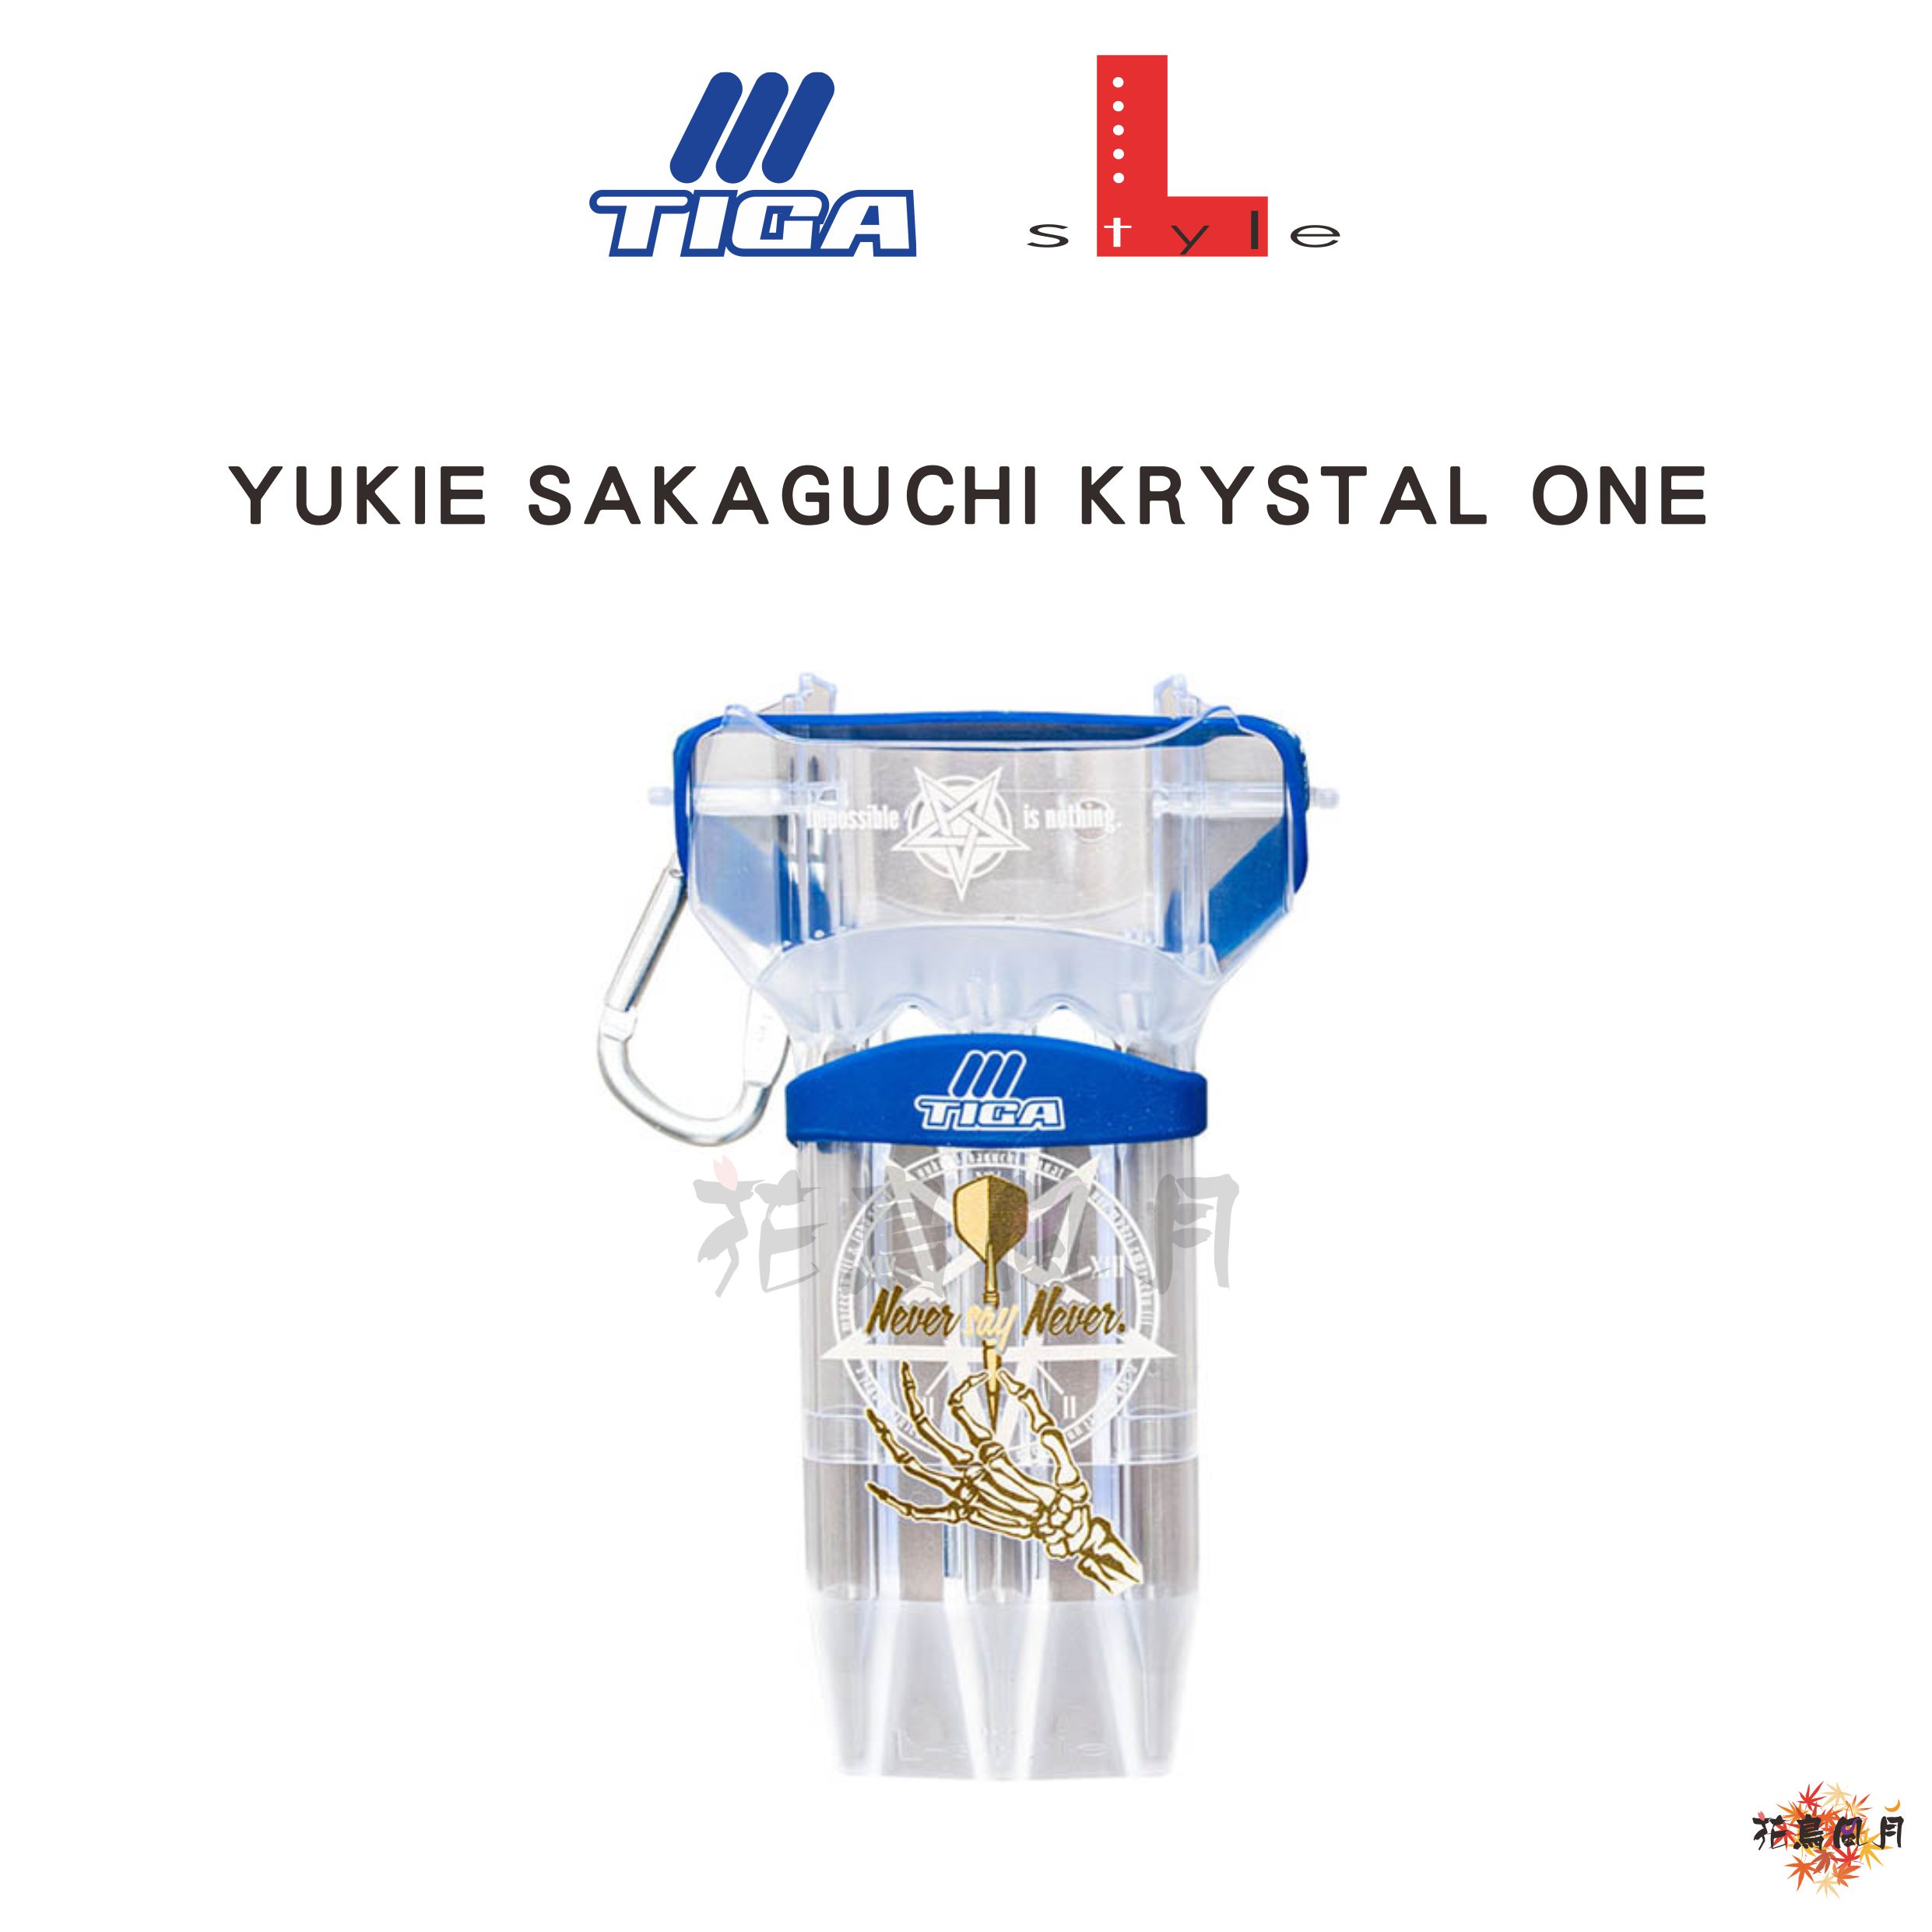 Lstyle-KrystalOne-YukieSakaguchi